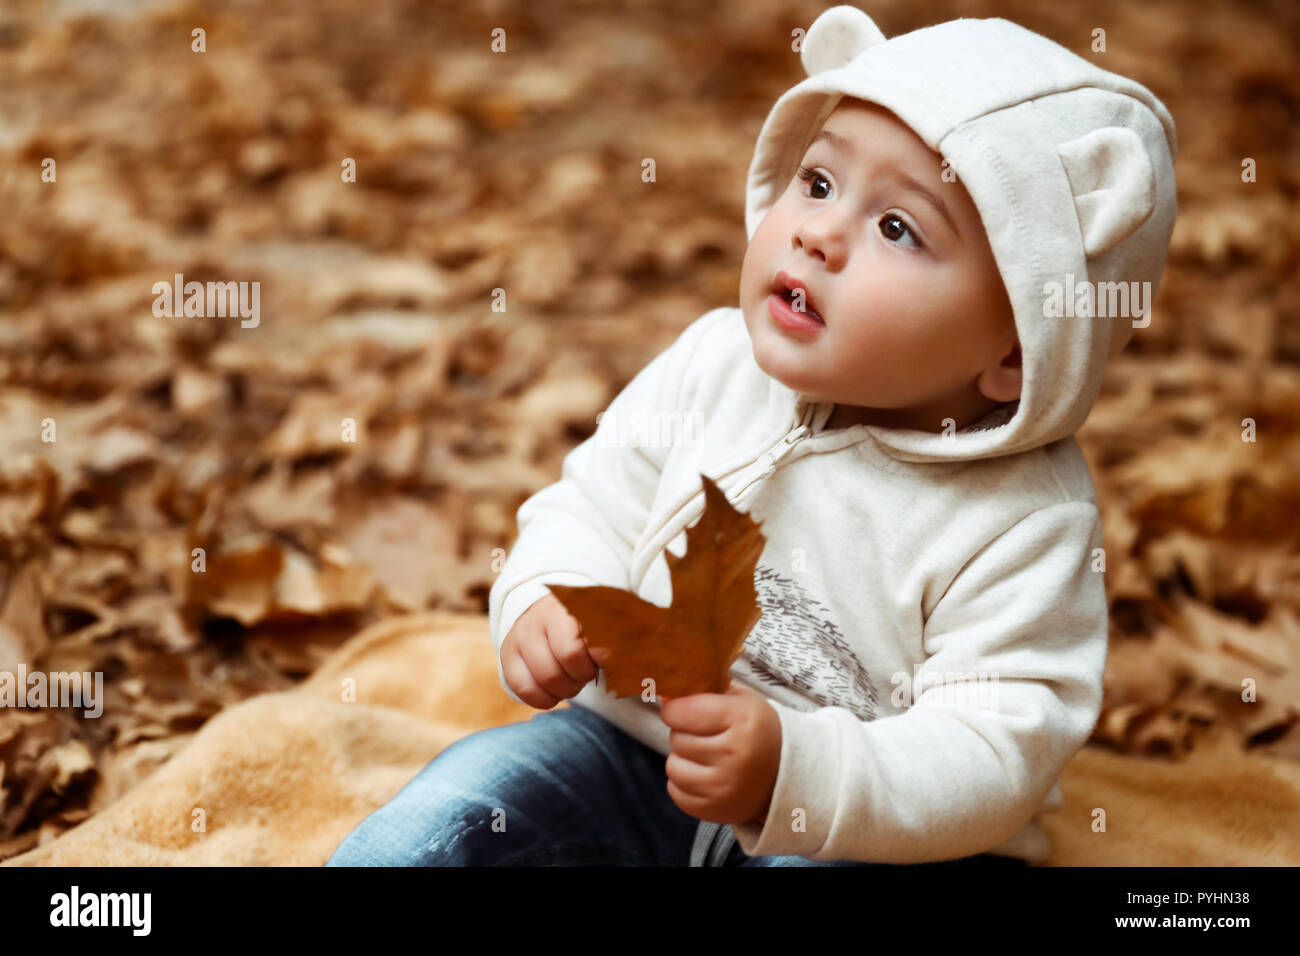 Süßes Baby im Herbst Wald, süßer kleiner Junge sitzt auf dem trockenen Baum Blätter im Park, genießen herbstliche Feiertage, glückliche unbeschwerte Kindheit Stockfoto